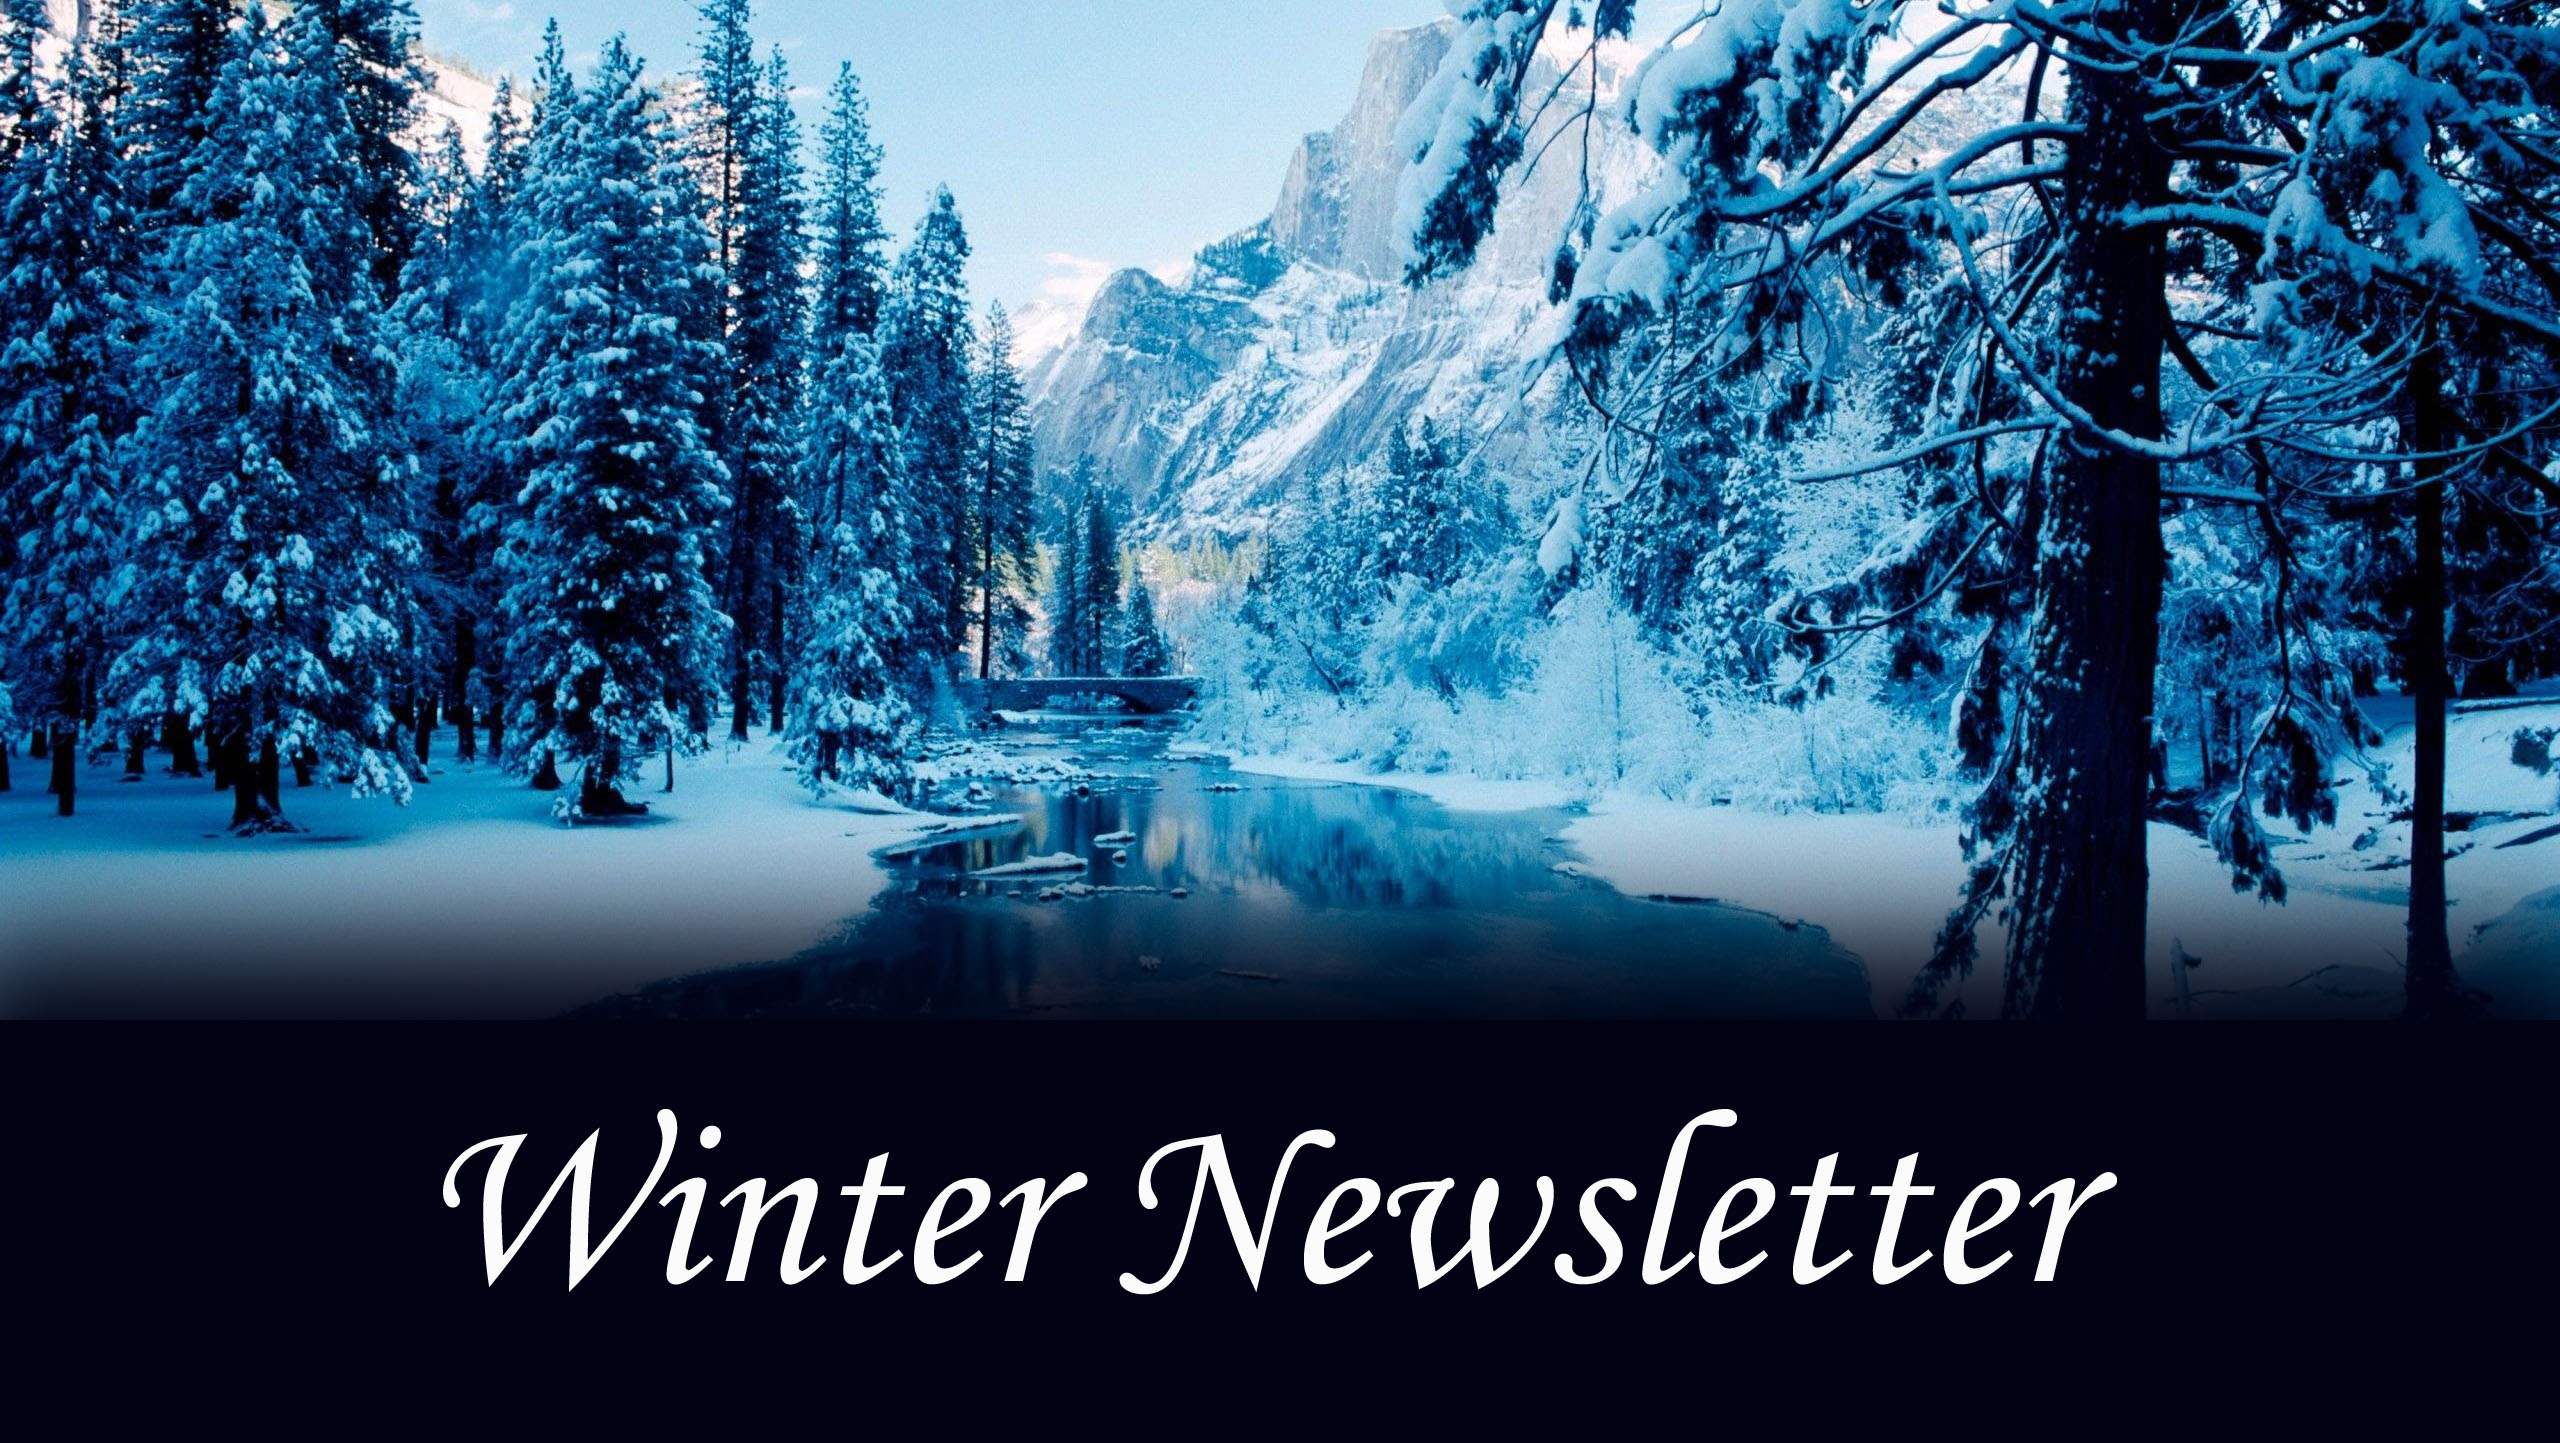 Winter Newsletter 2020 Image